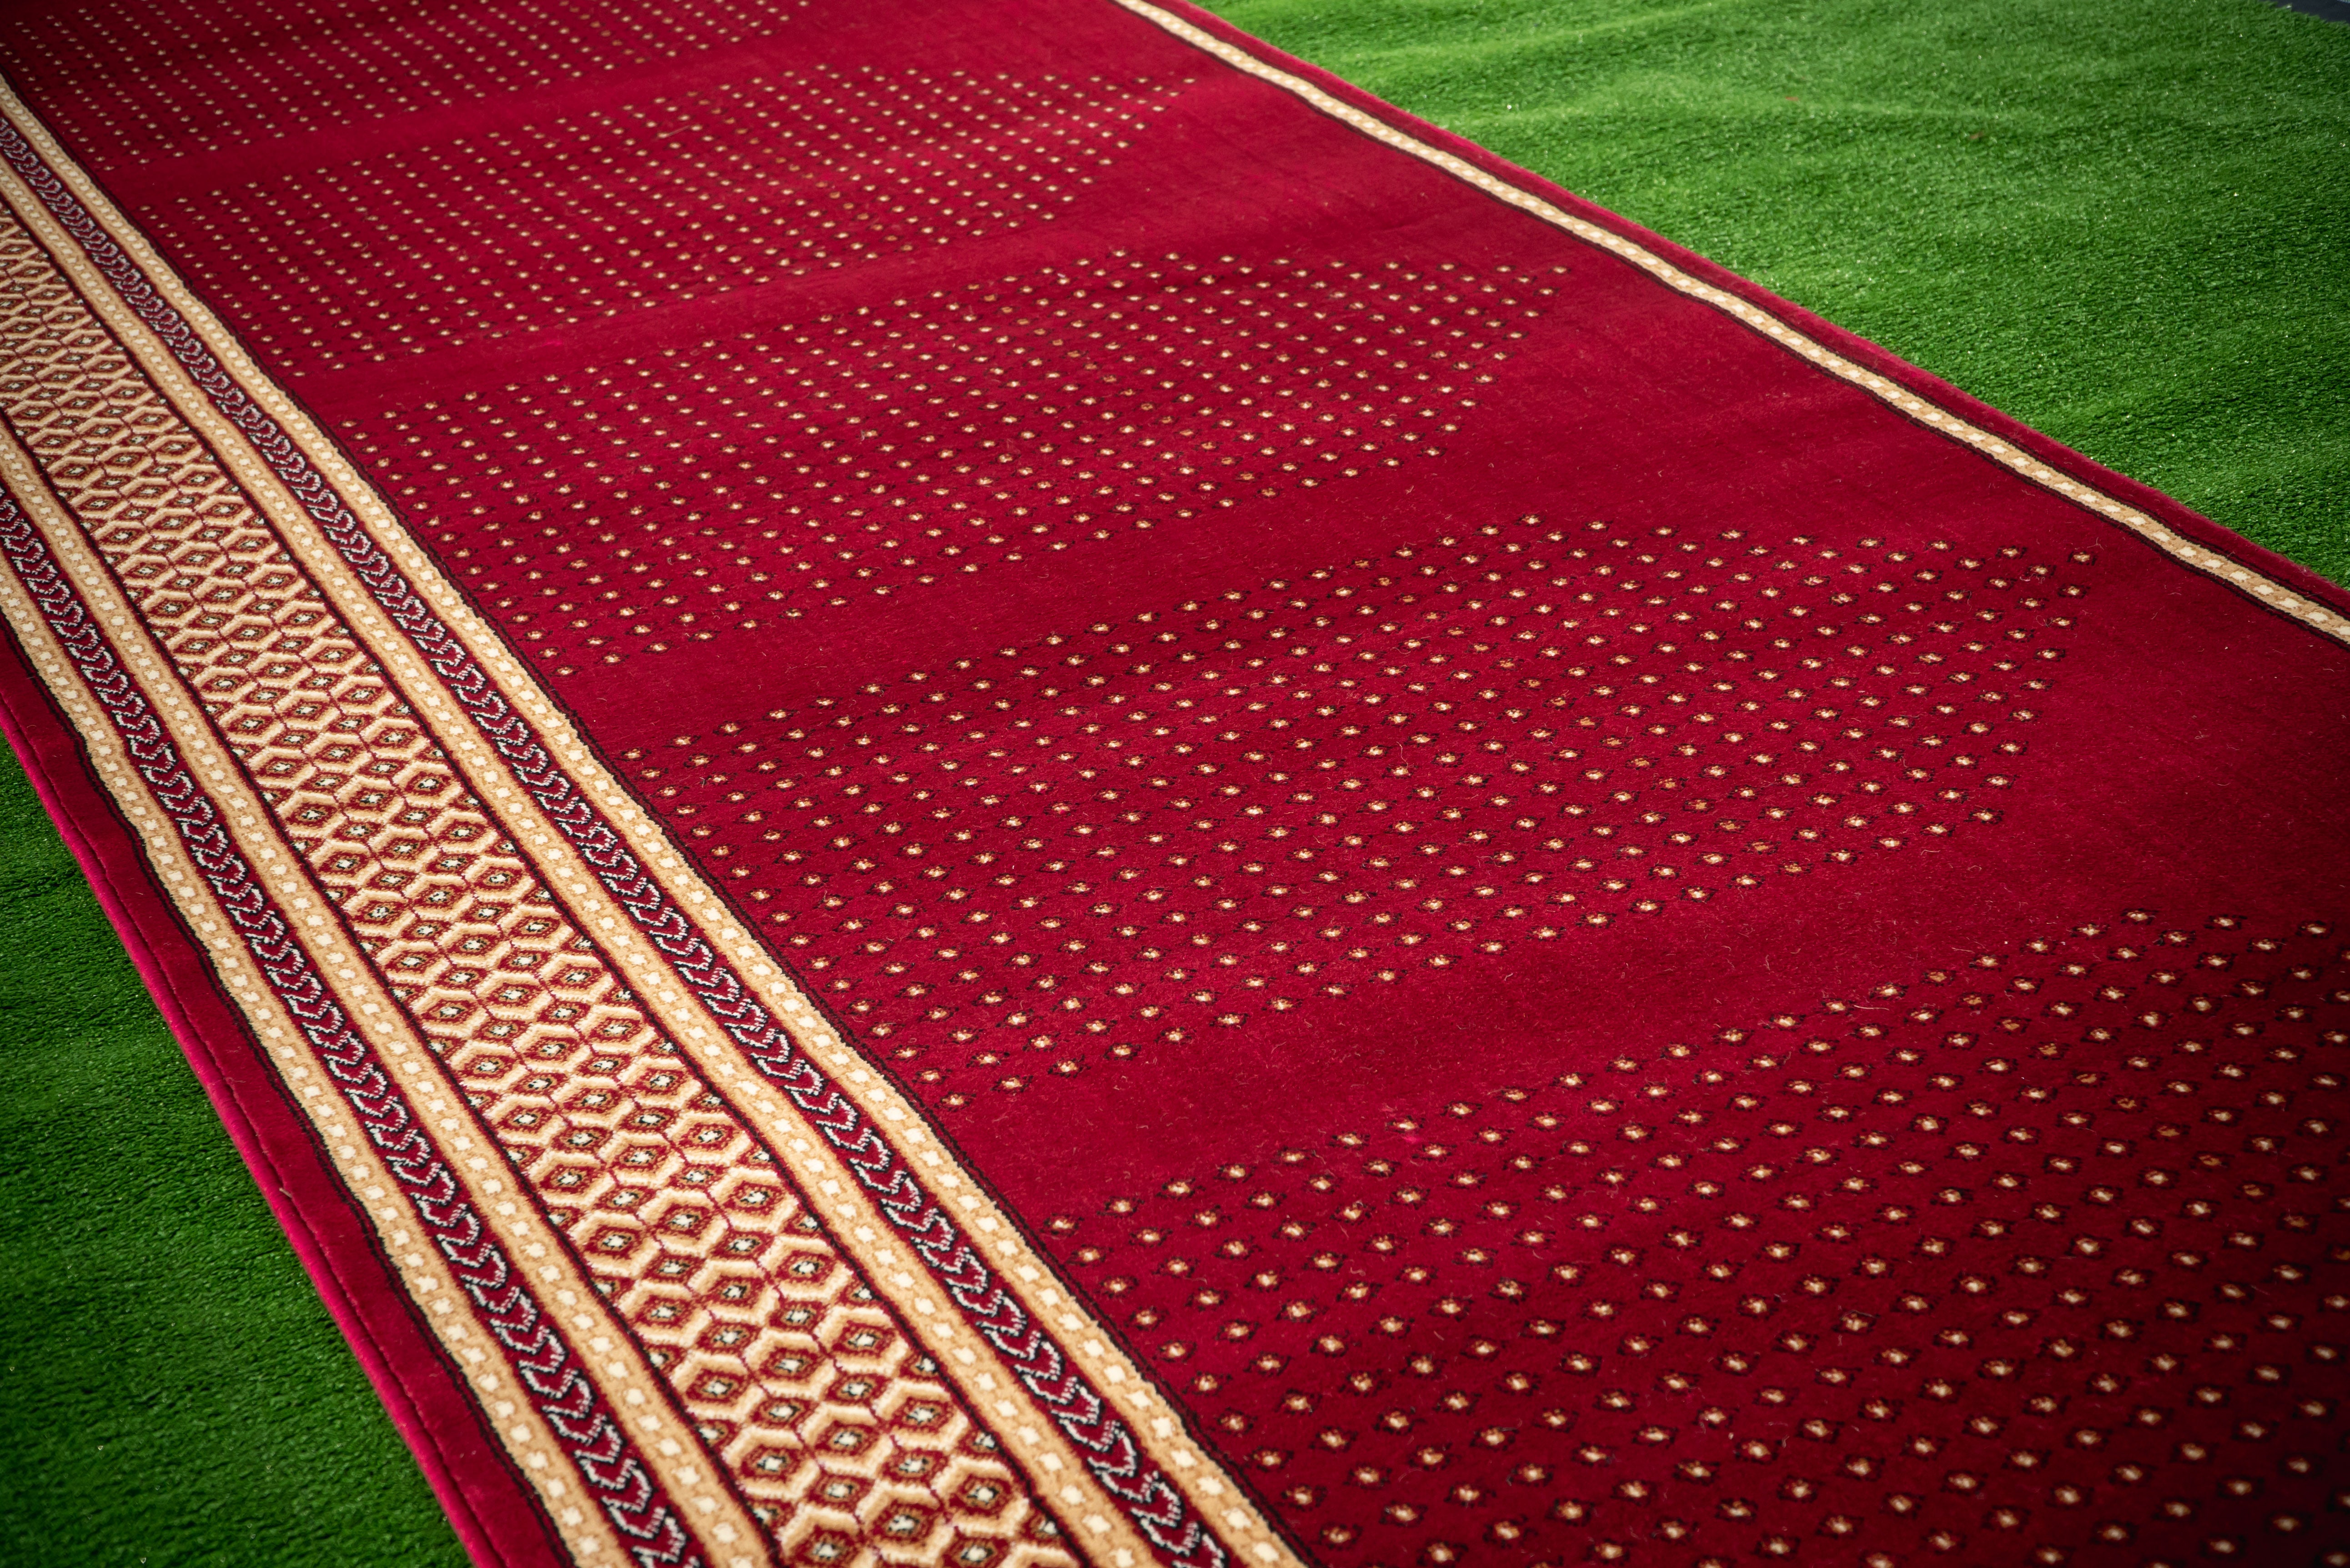 Luxurious Red Prayer Mat